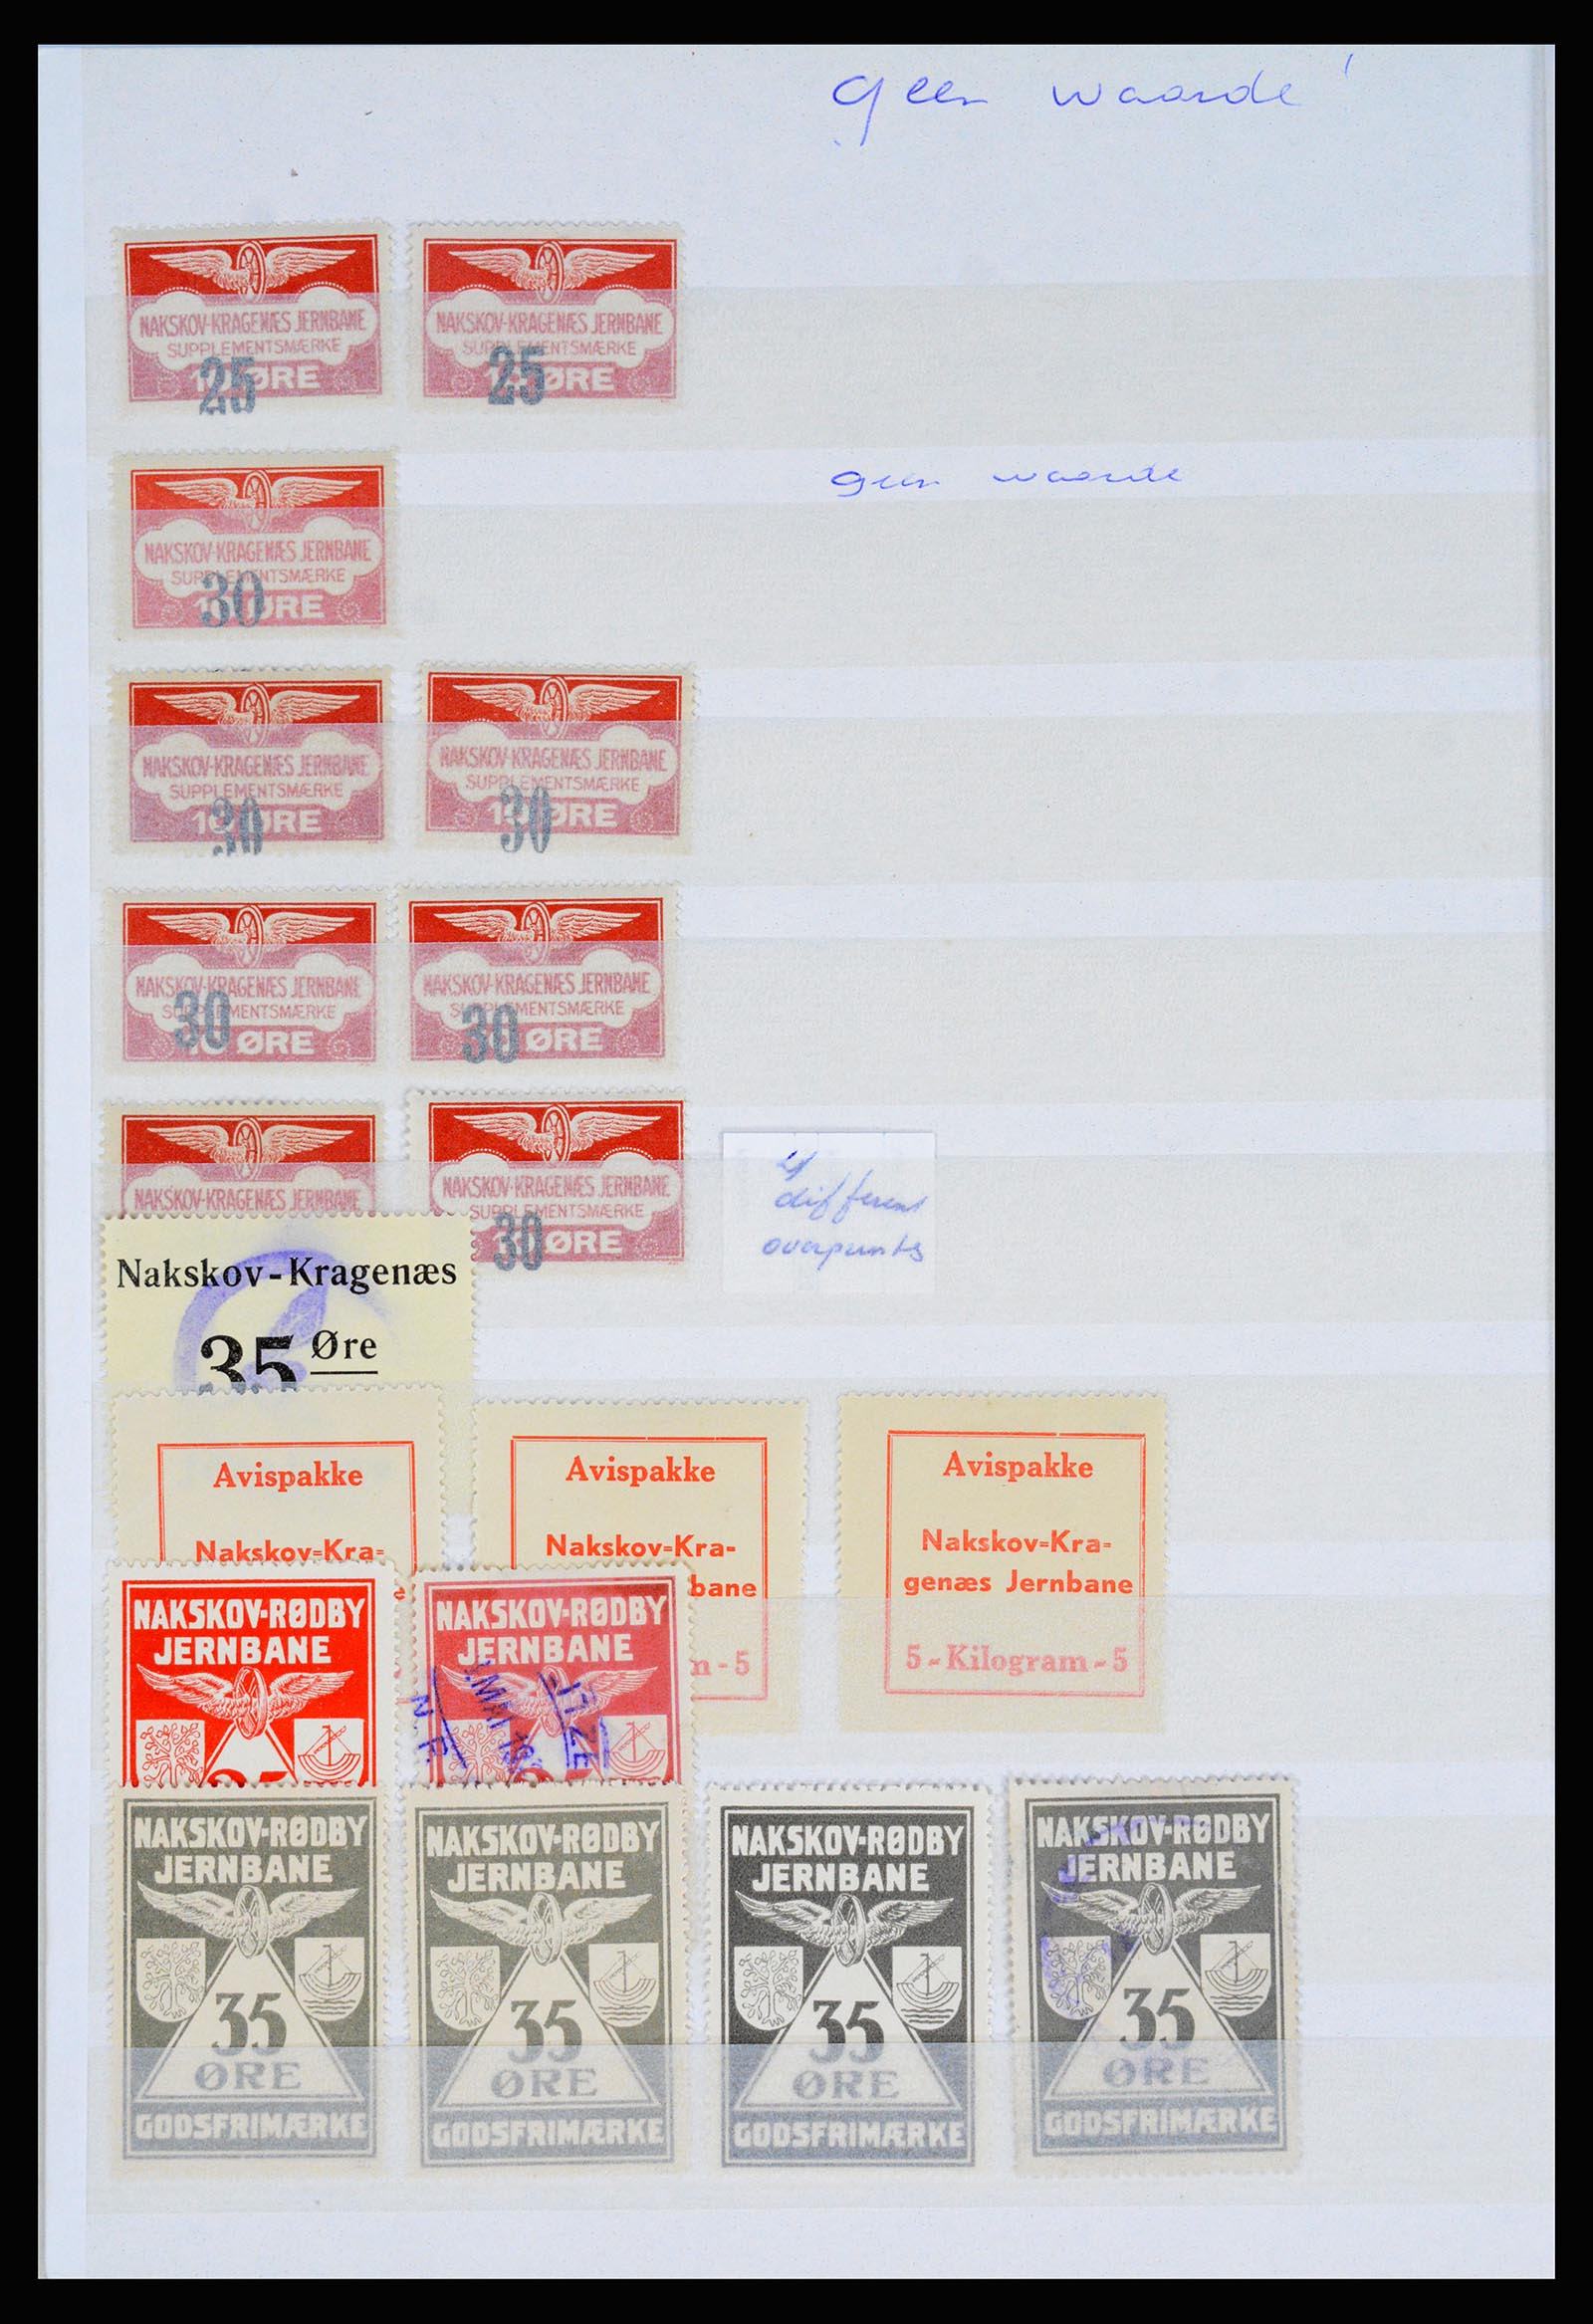 36982 101 - Postzegelverzameling 36982 Denemarken spoorwegzegels.